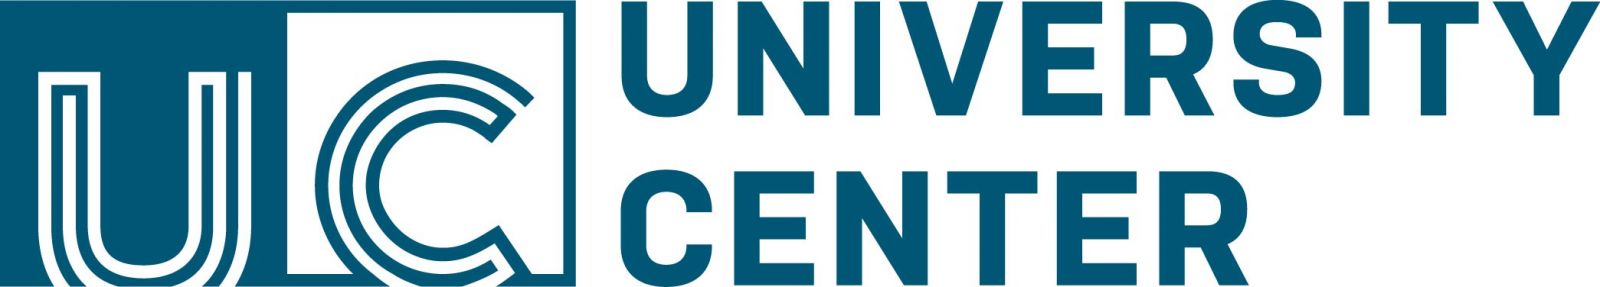 university center logo